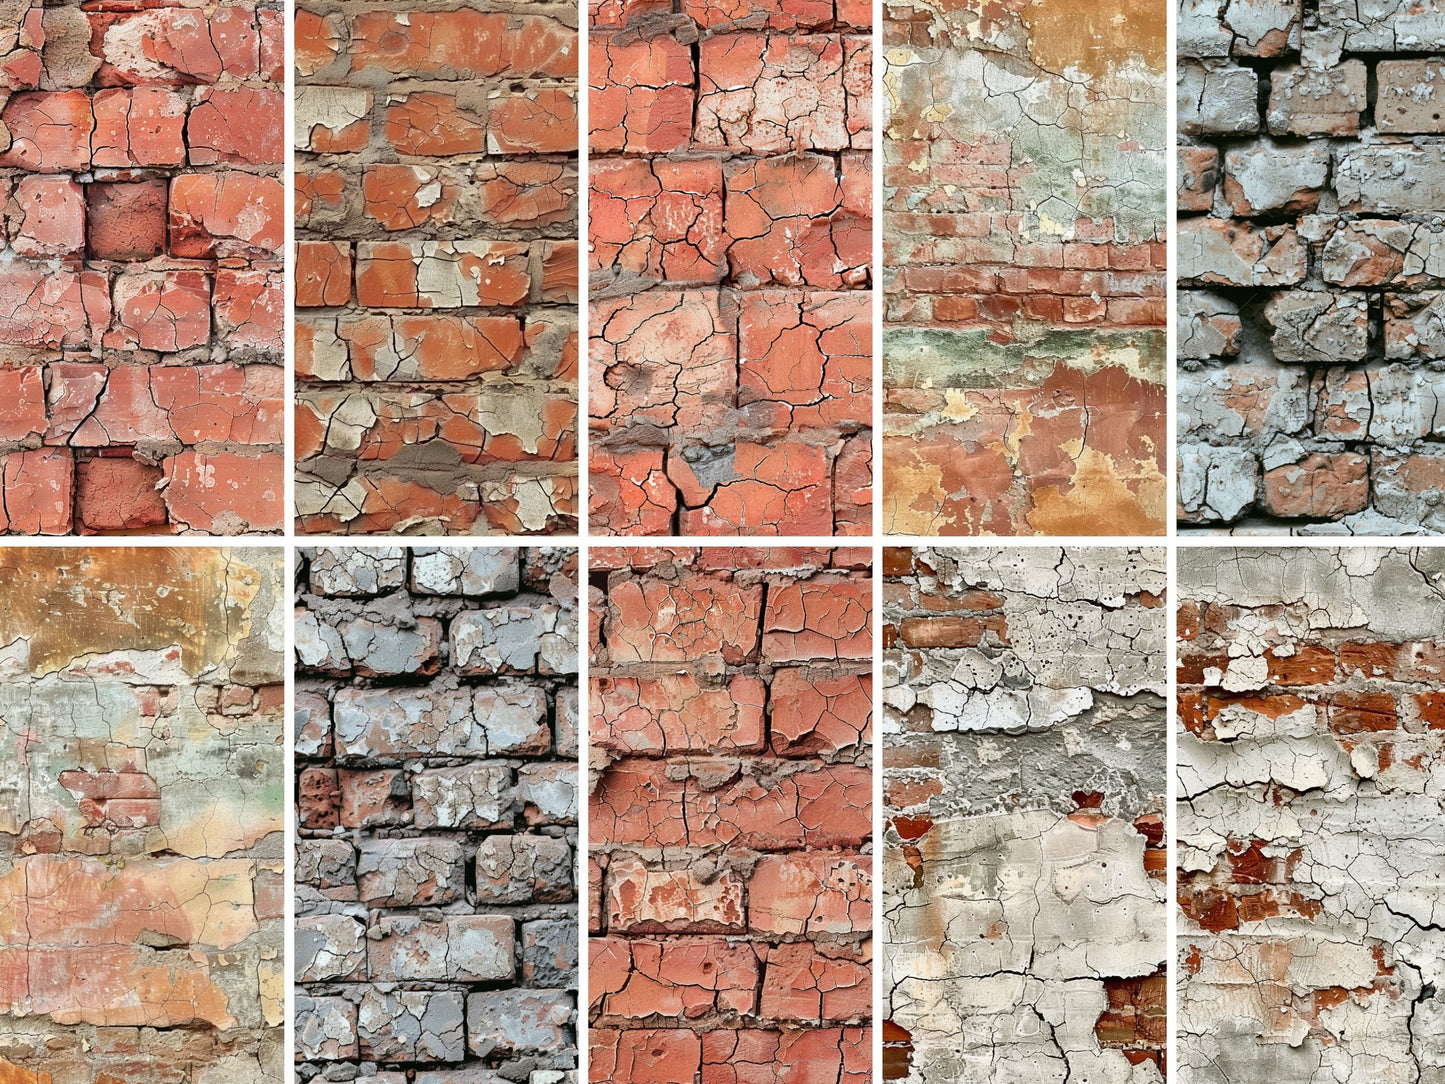 Brick textures